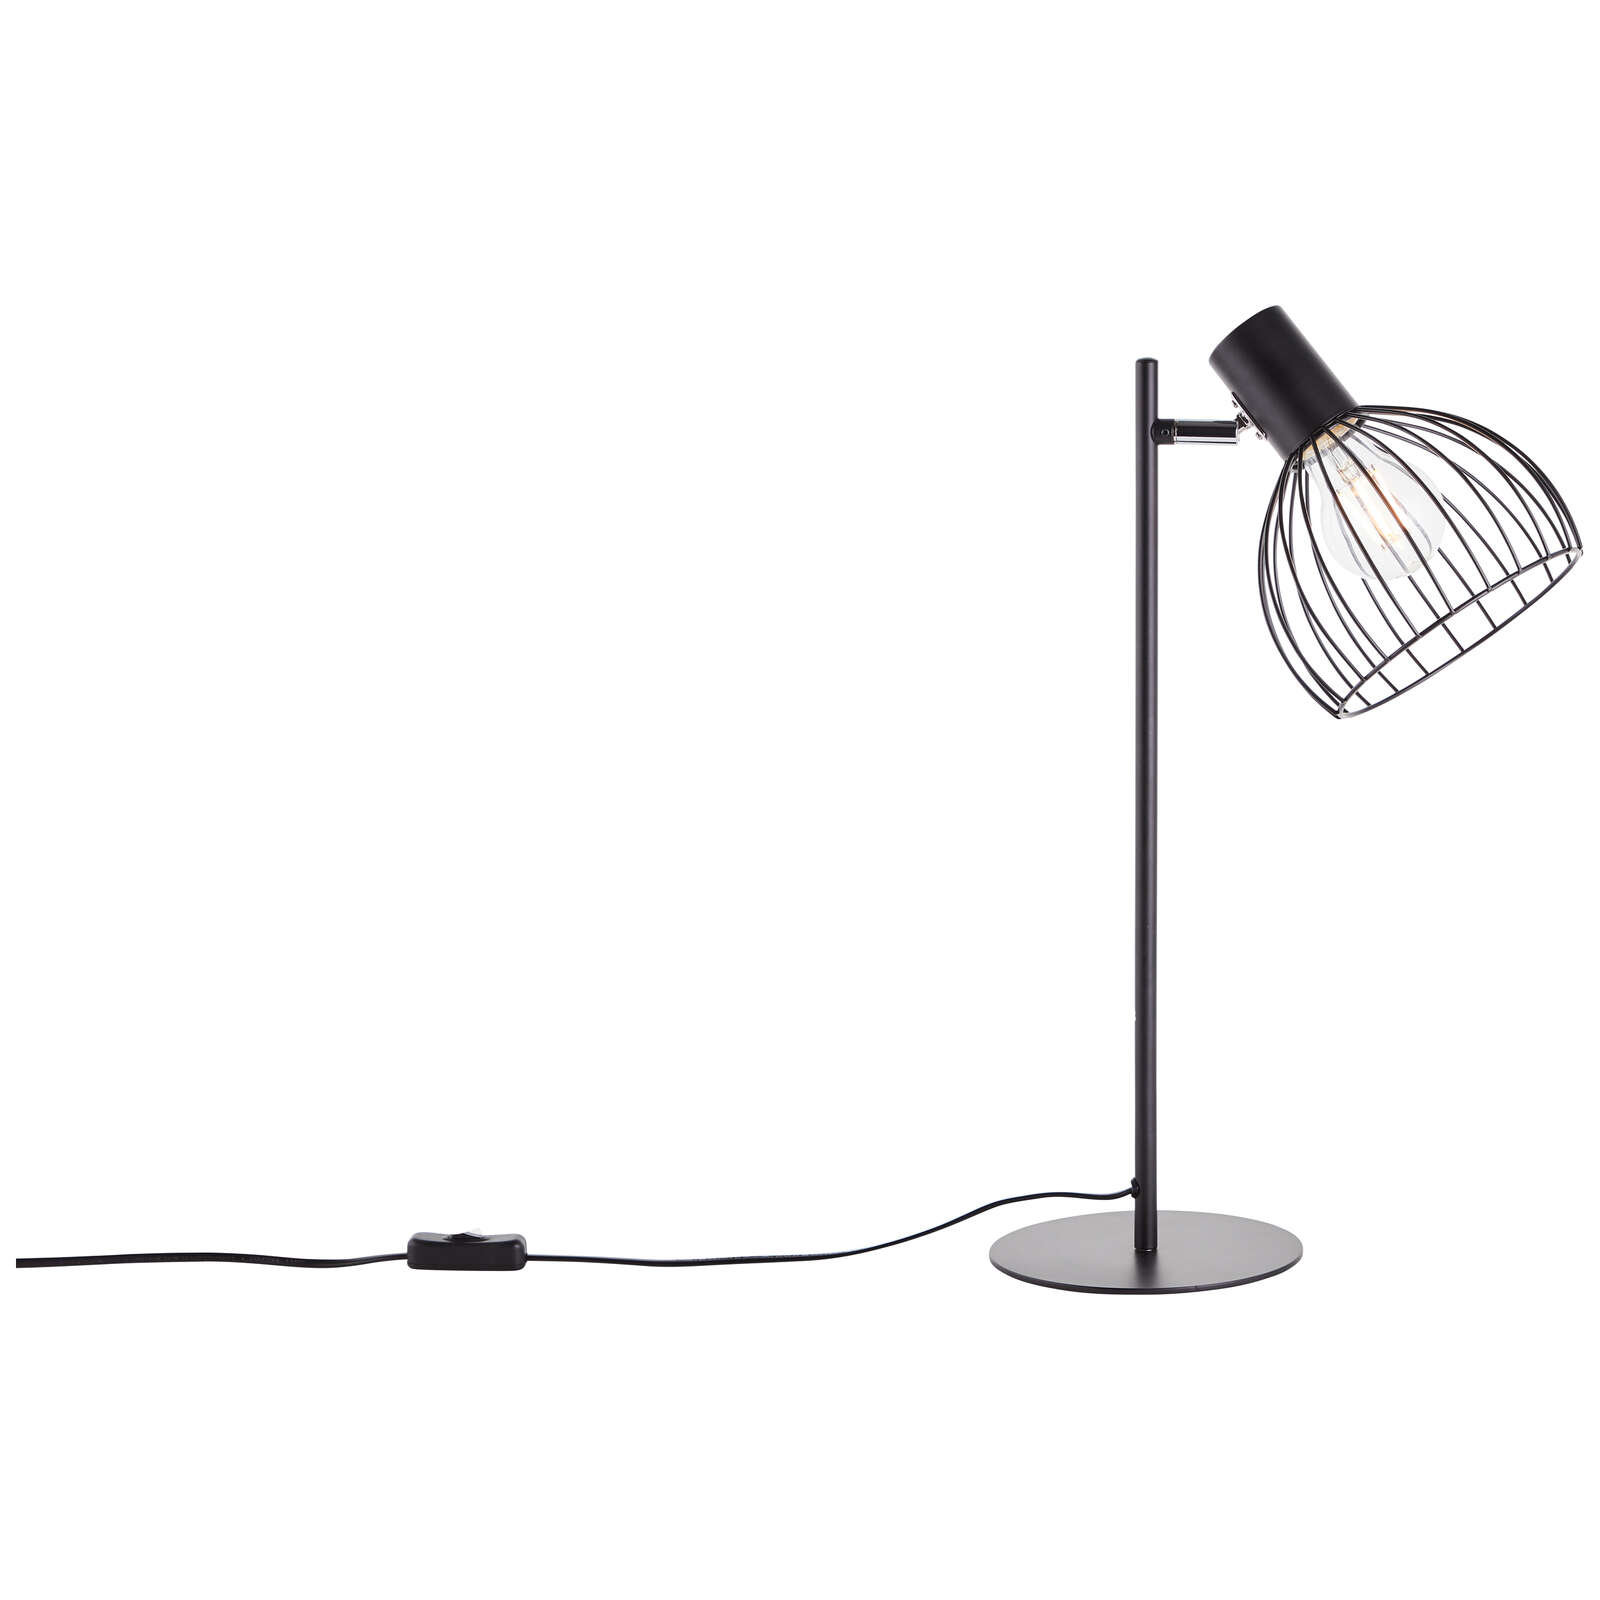             Metal table lamp - Bruno 1 - Black
        